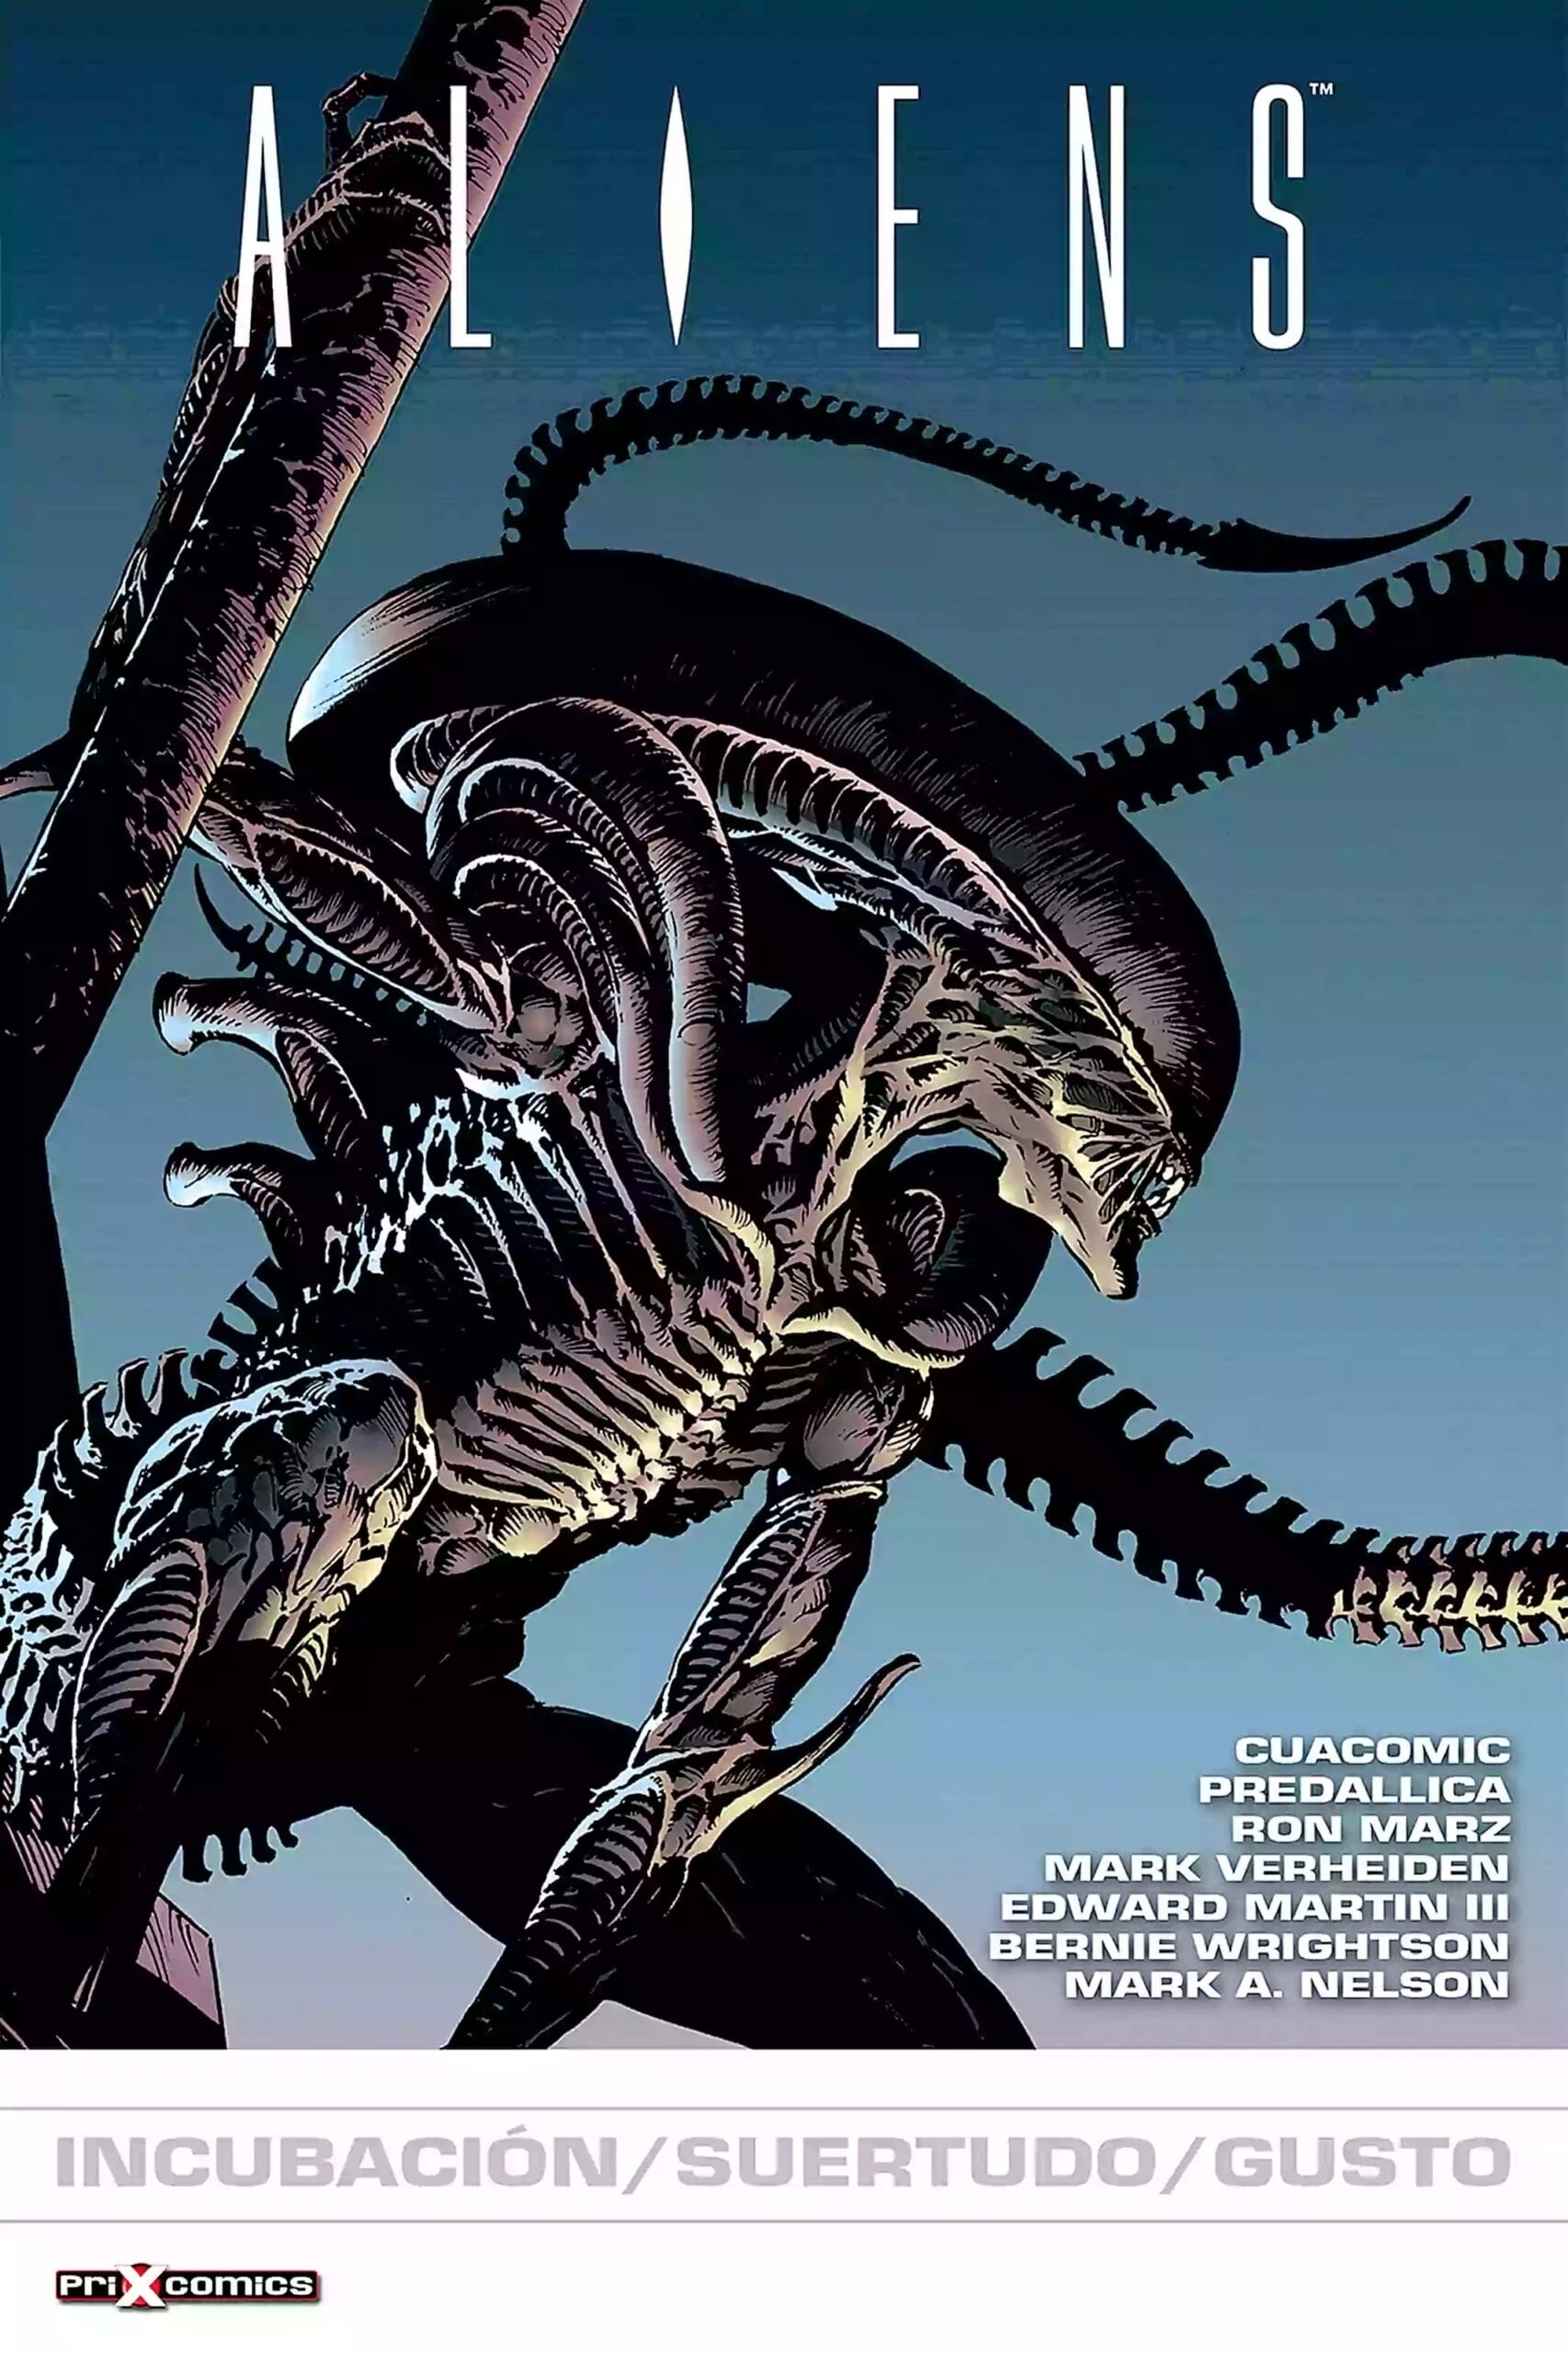 Comic completo Aliens: Incubacion/ Suertudo/ Gusto